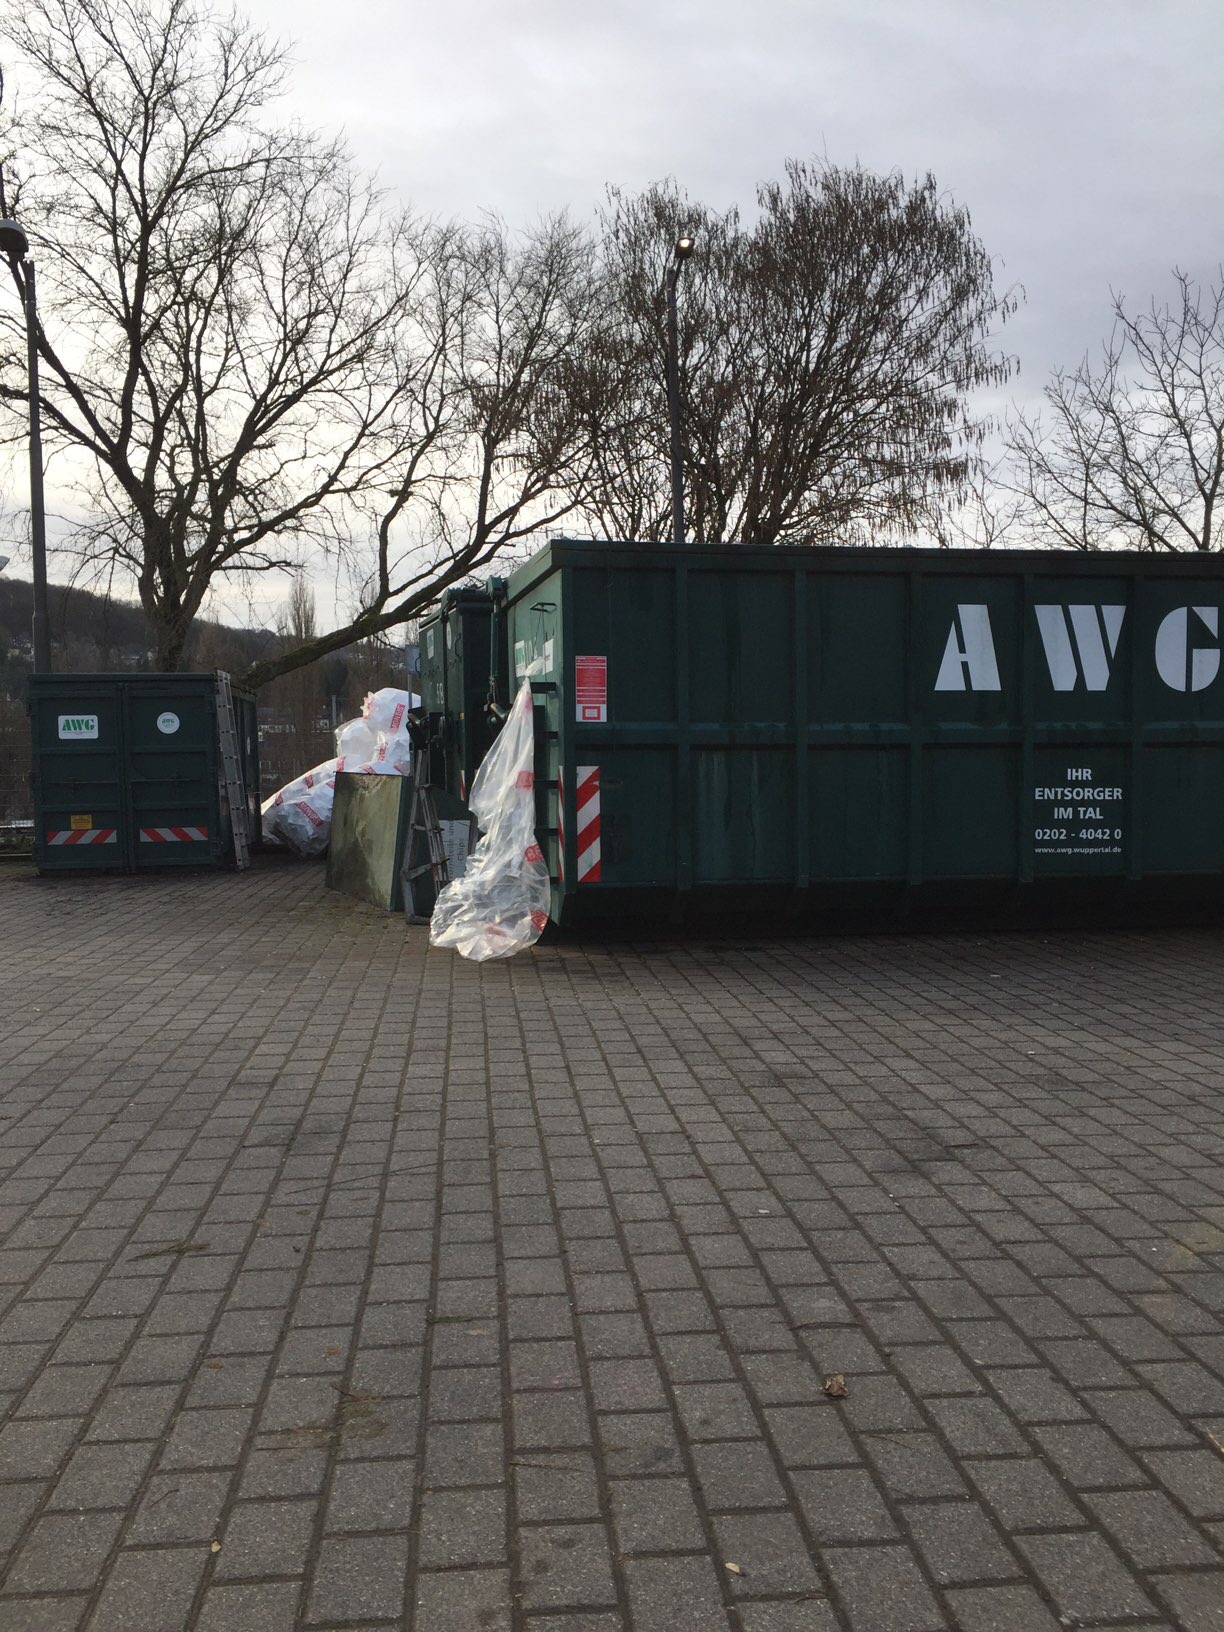 Bild 1 AWG Abfallwirtschafts- gesellschaft mbH Wuppertal in Wuppertal